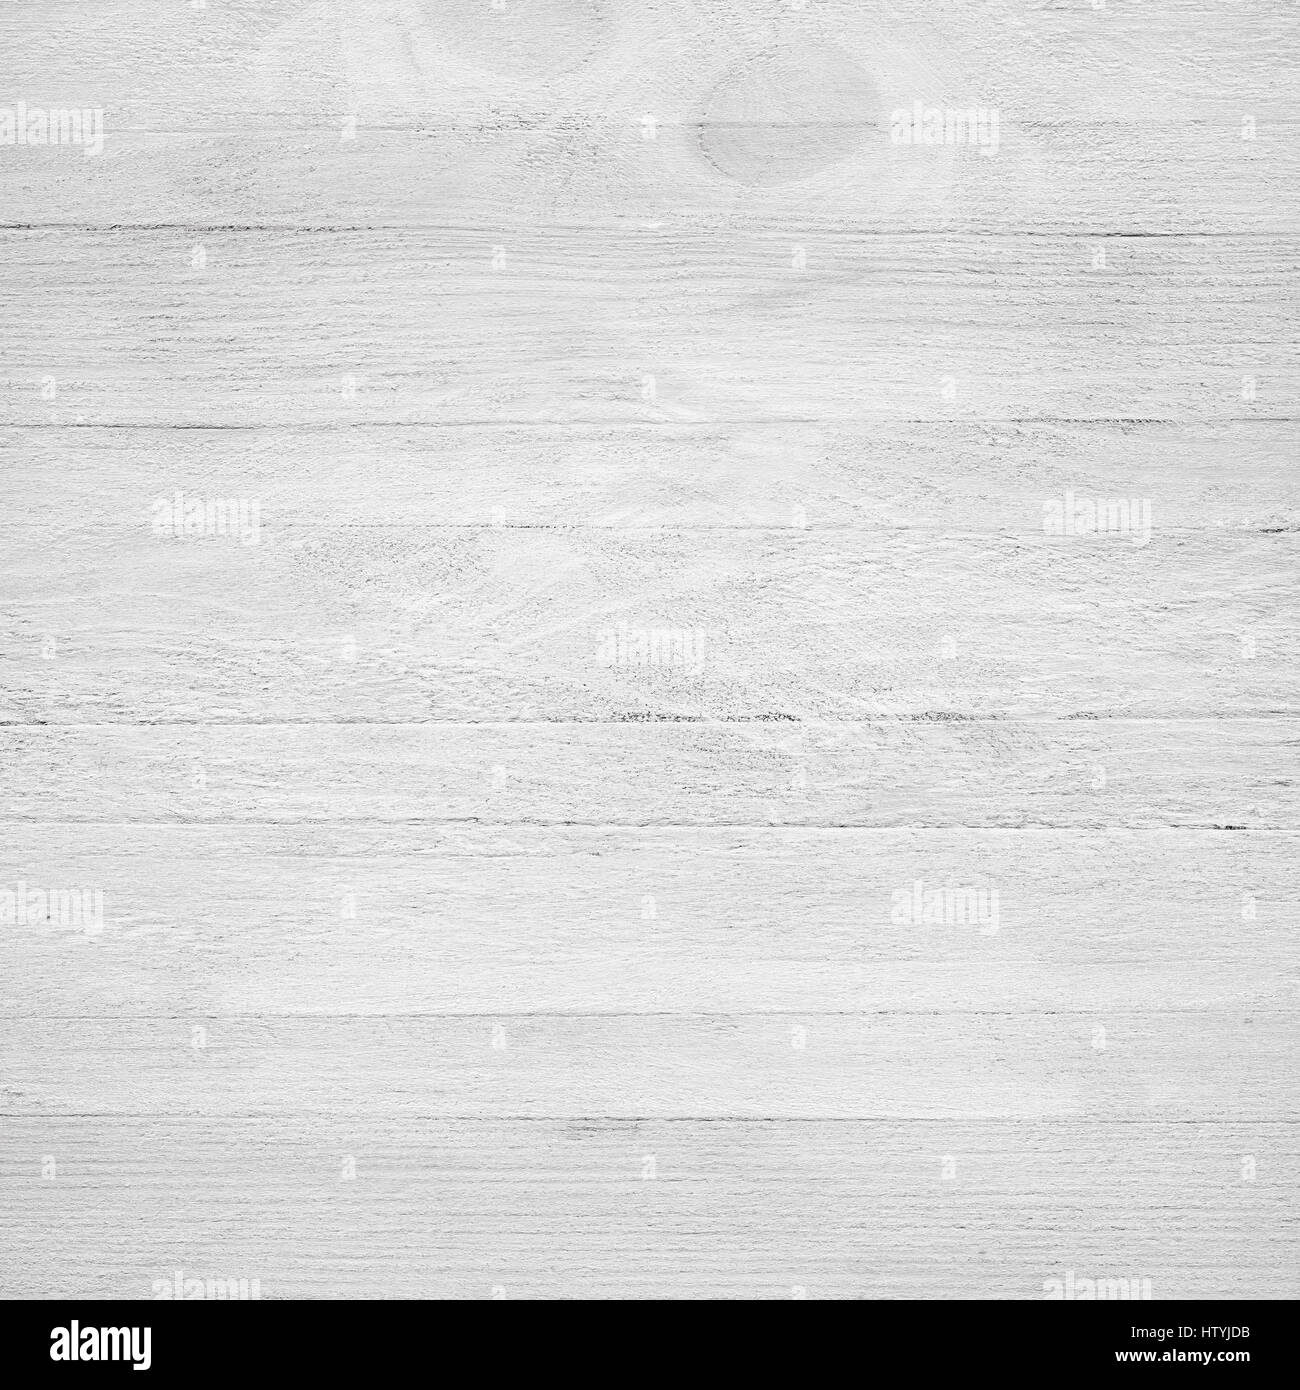 Legno bianco choping, tagliare il bordo, il piano portapaziente, la superficie del pavimento o parete Foto Stock